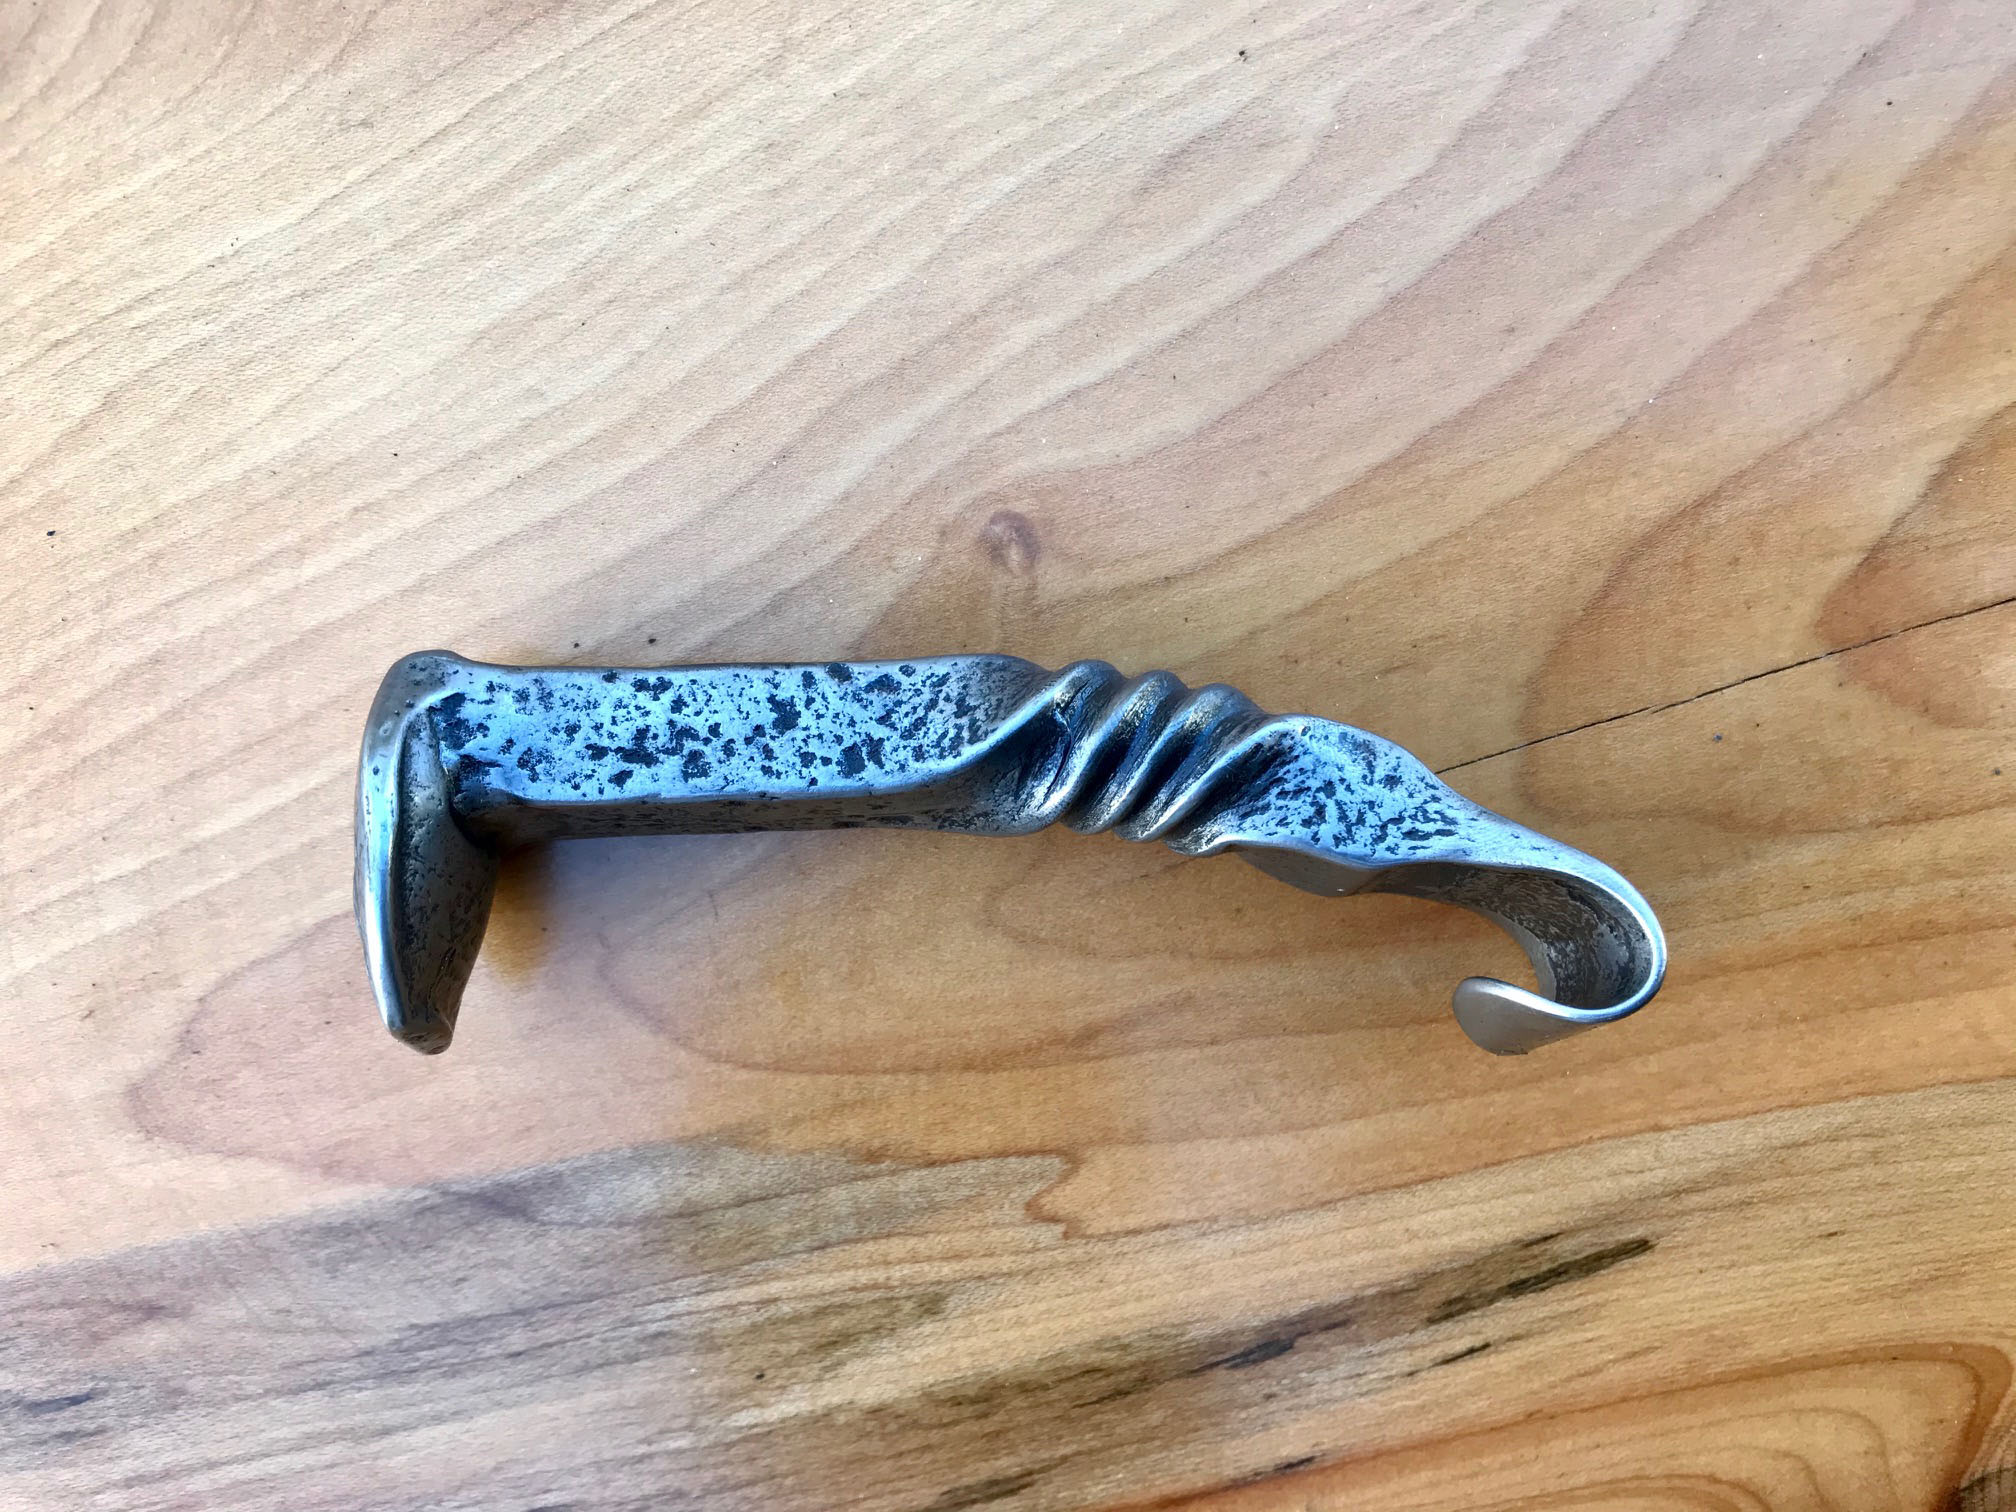 Hand Forged Railroad Spike Oyster Shucker Knife W/ Bottle Opener